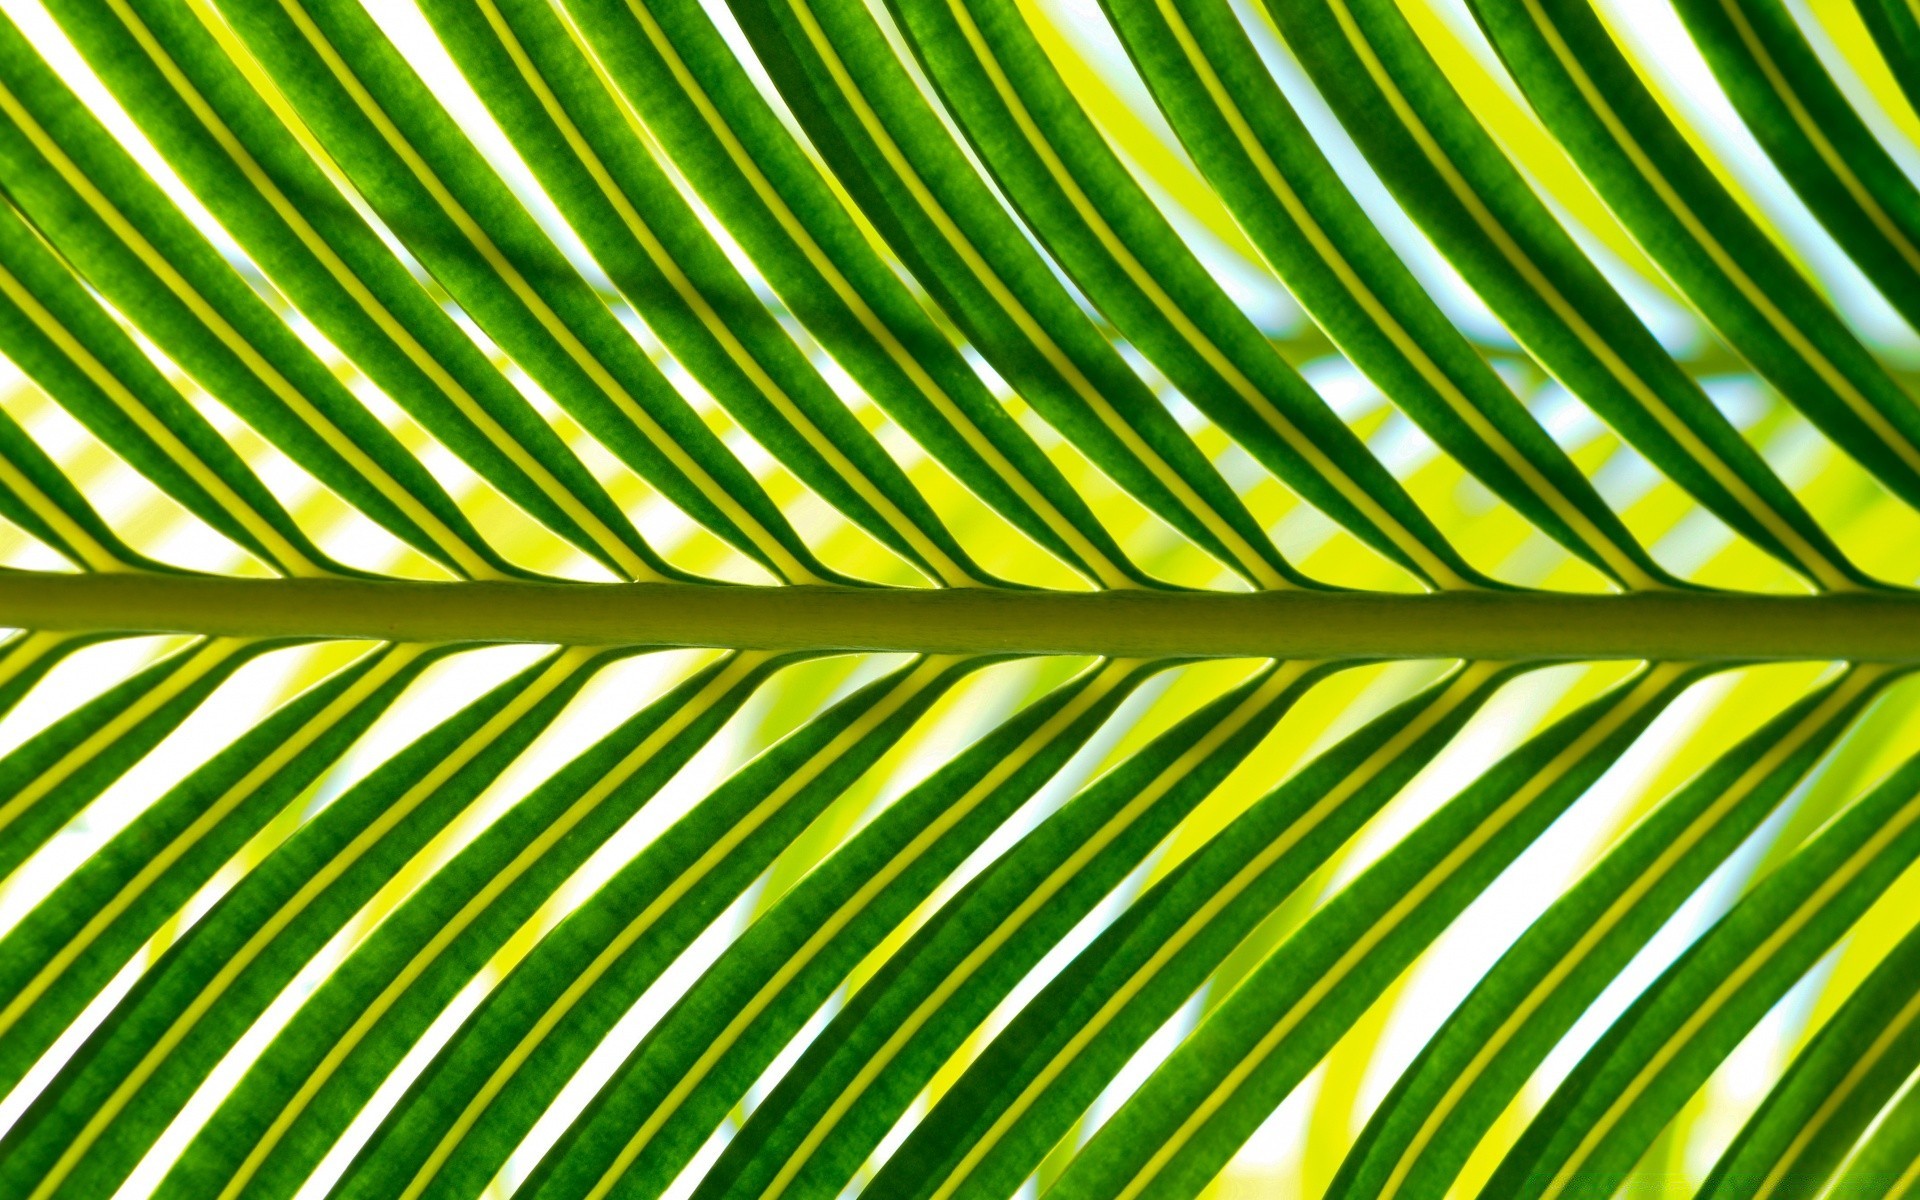 растения лист флора рост тропический фронд природа лето рабочего стола фотосинтез пышные ладони сад яркий экология аннотация текстура шаблон среды дерево